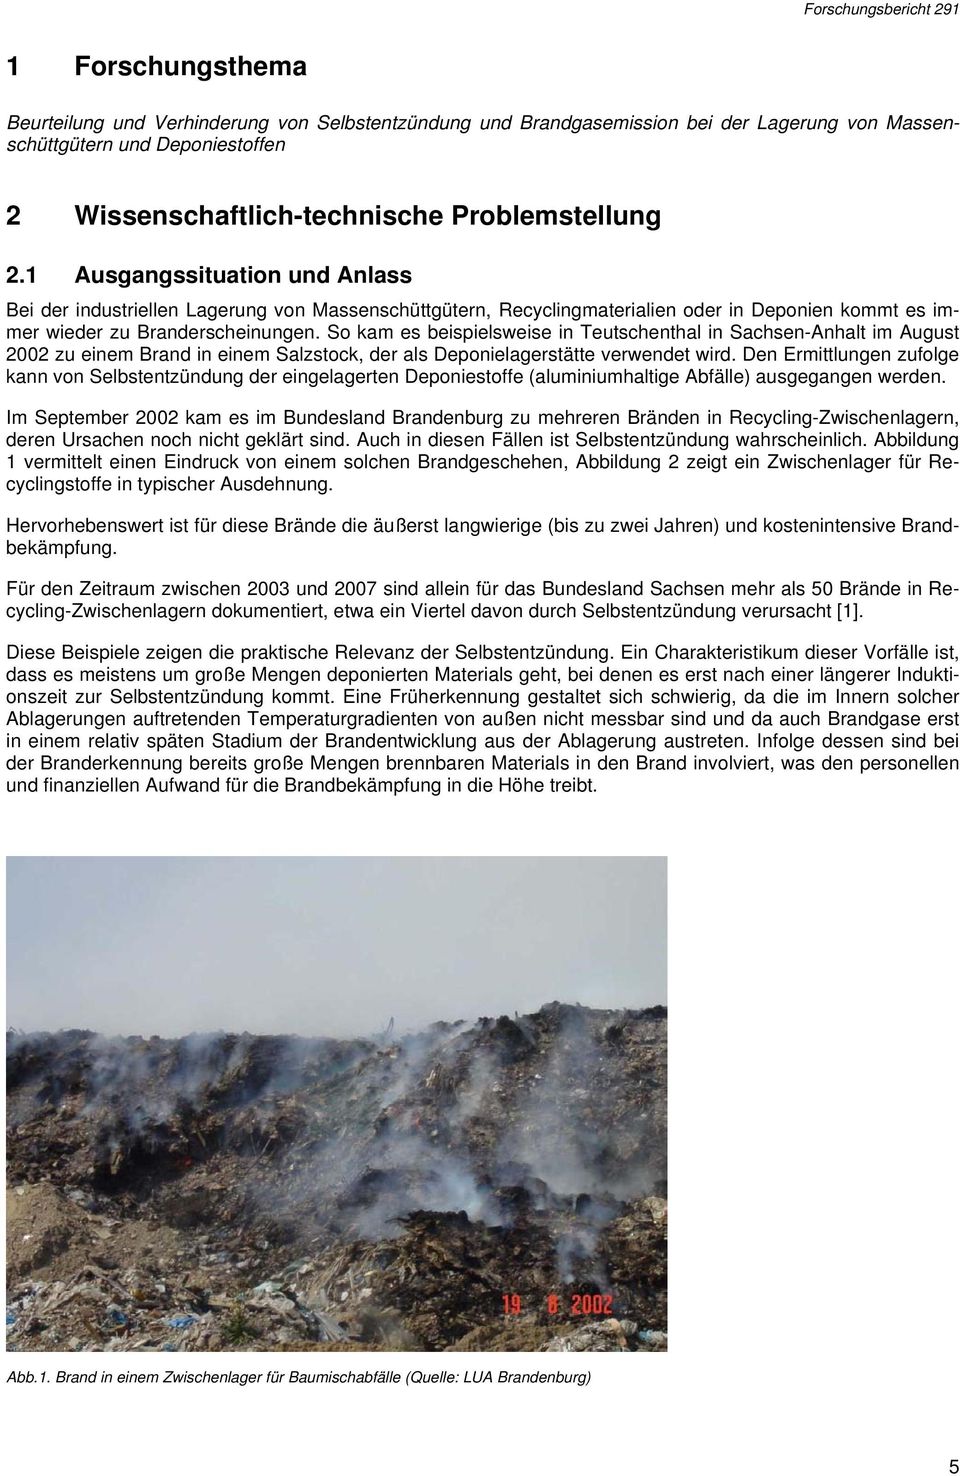 So kam es beispielsweise in Teutschenthal in Sachsen-Anhalt im August 2002 zu einem Brand in einem Salzstock, der als Deponielagerstätte verwendet wird.